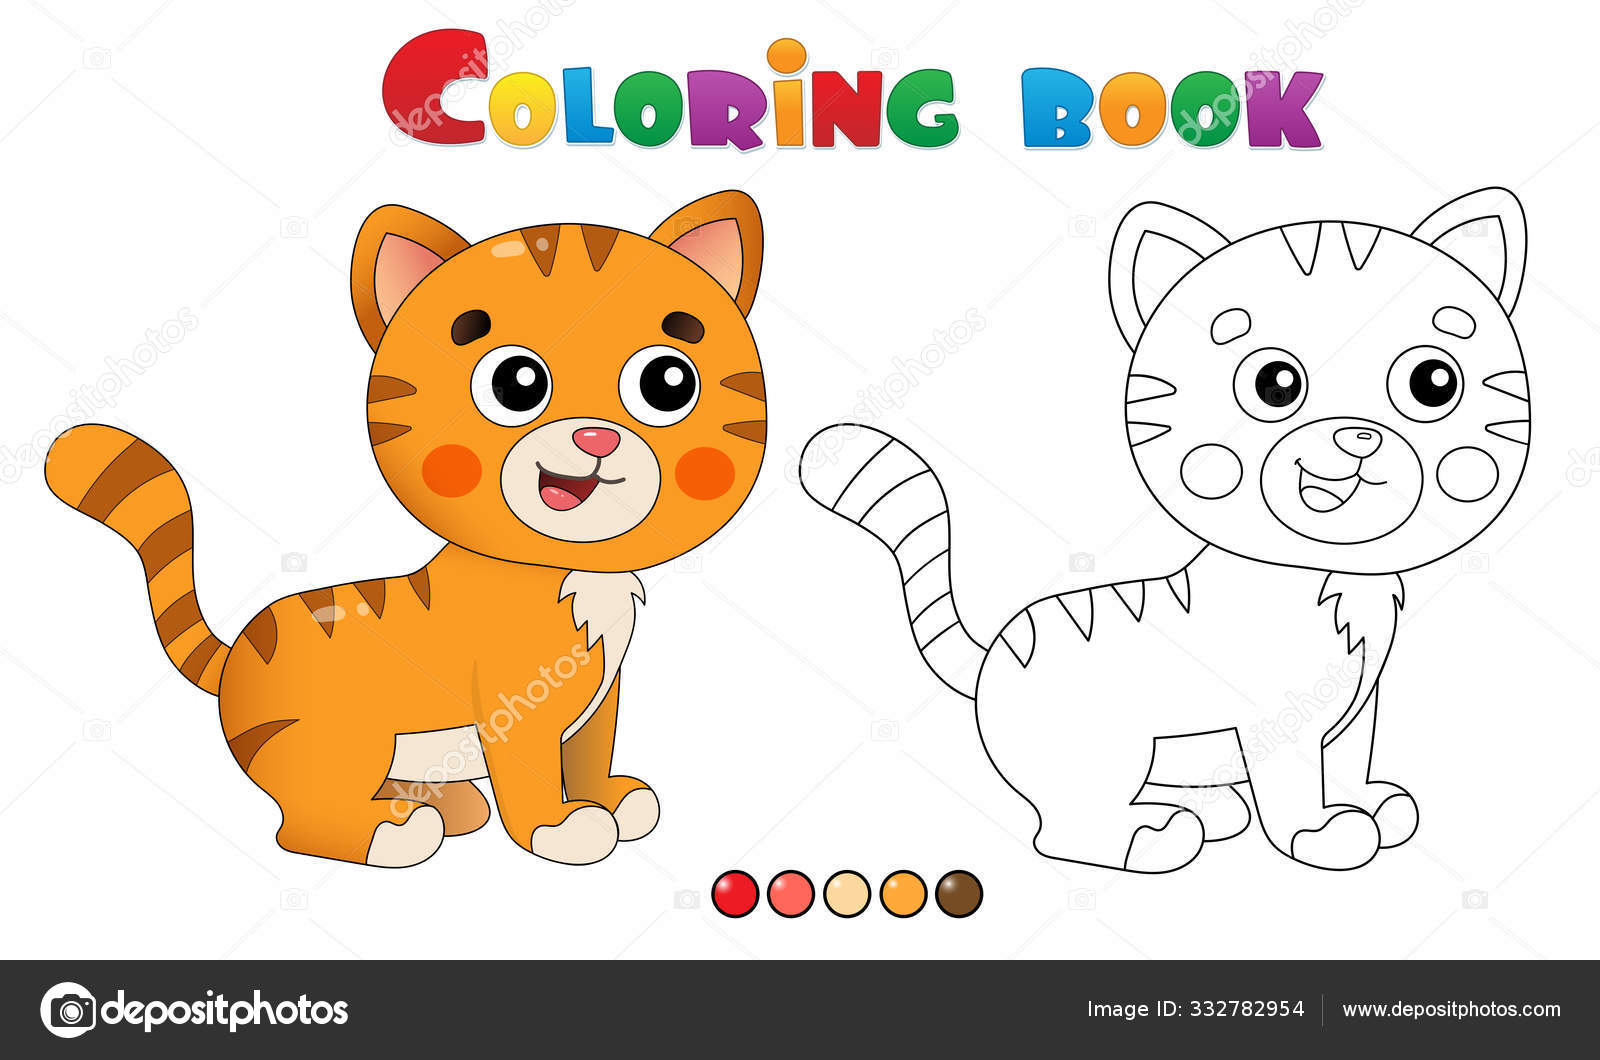 Desenho de gato para colorir e imprimir para crianças